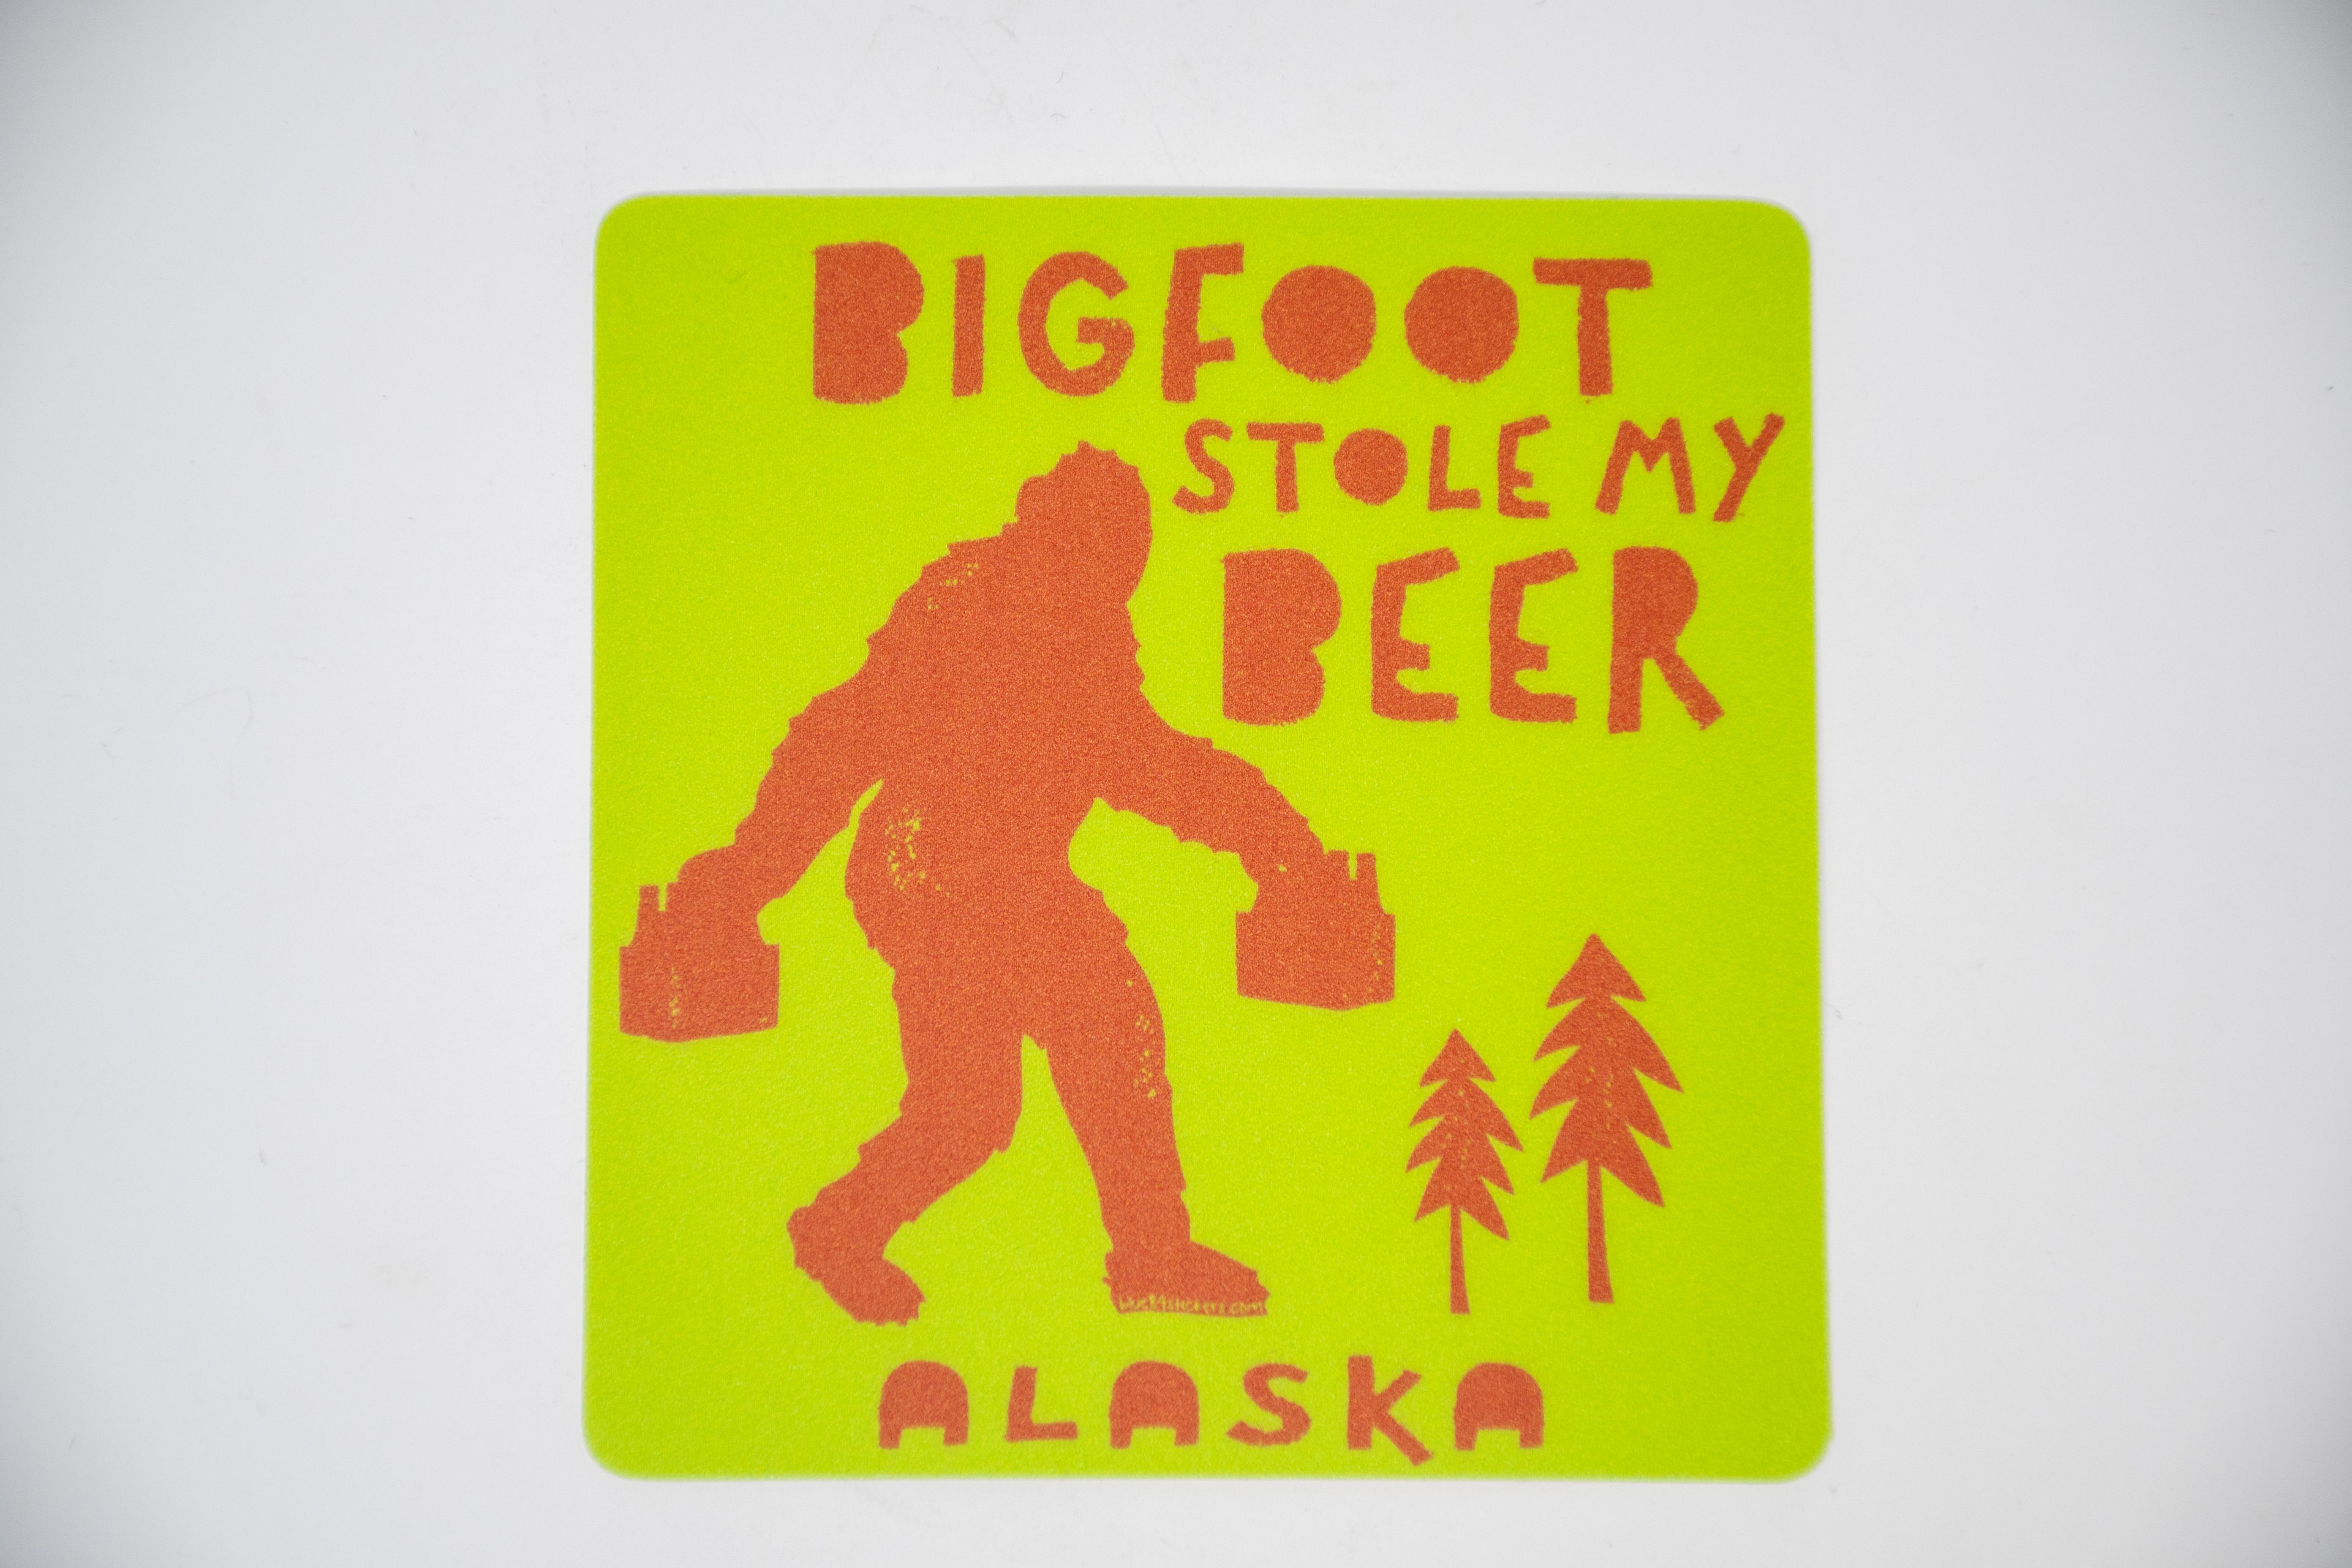  Sticker - Stolen- Bigfoot